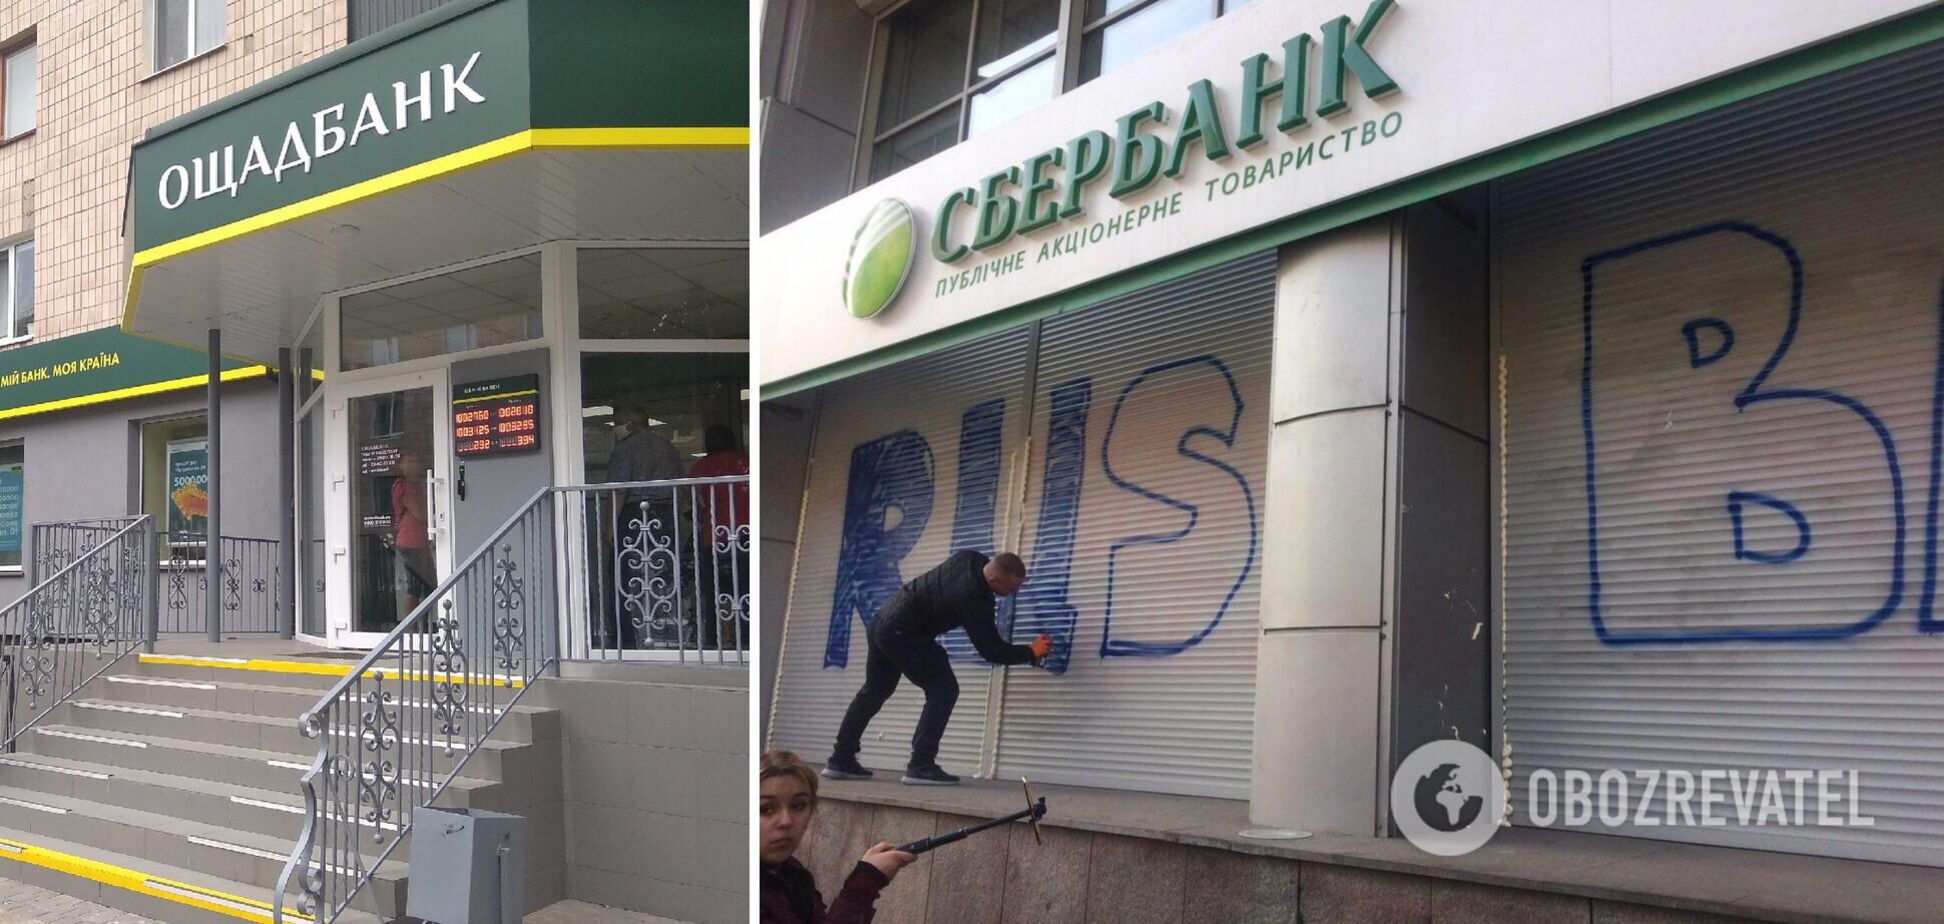 Сбербанк Росії працюватиме в Україні під іншою назвою